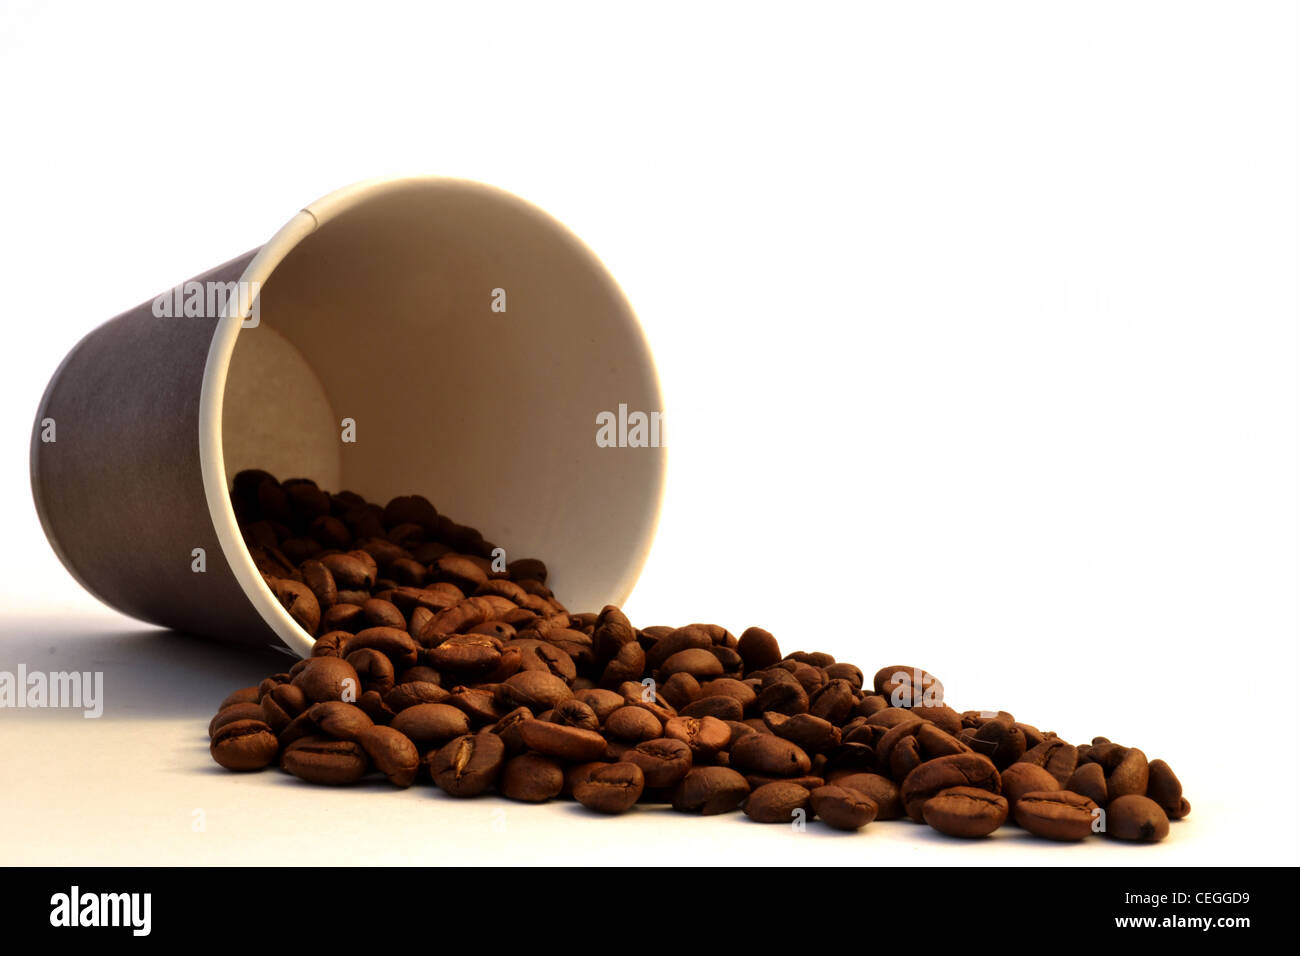 Kunststoff Kaffeetasse mit braunen Etikett und weißen Deckel - Cup s Seite mit Kaffee Bohnen verschütten Handauflegen zum mitnehmen Stockfoto